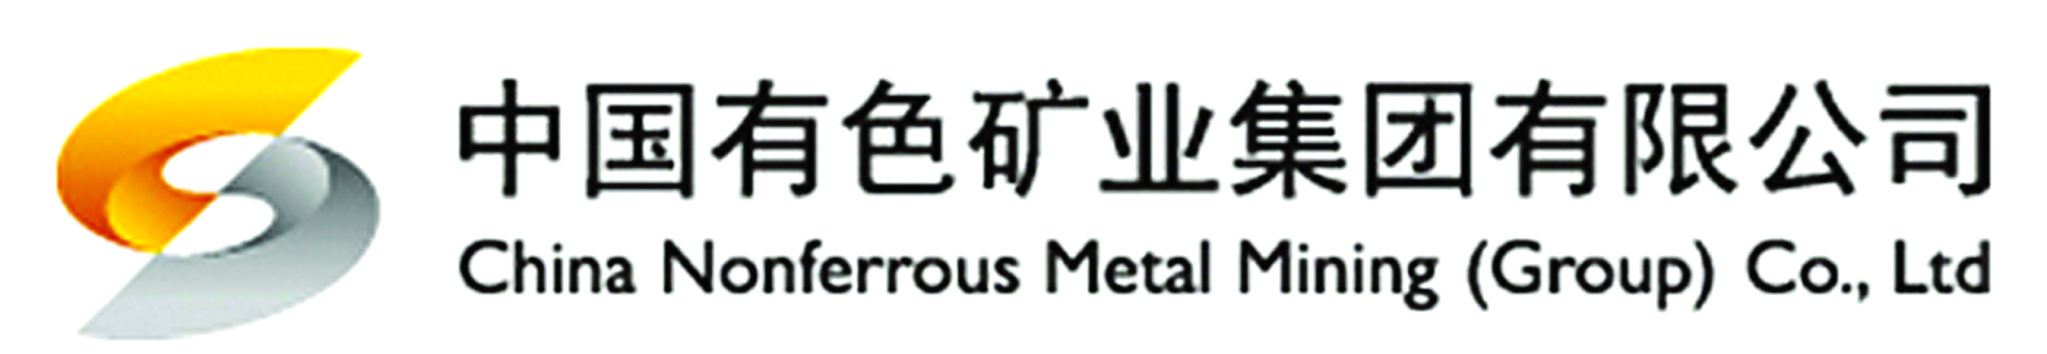 中国有色矿业集团有限公司